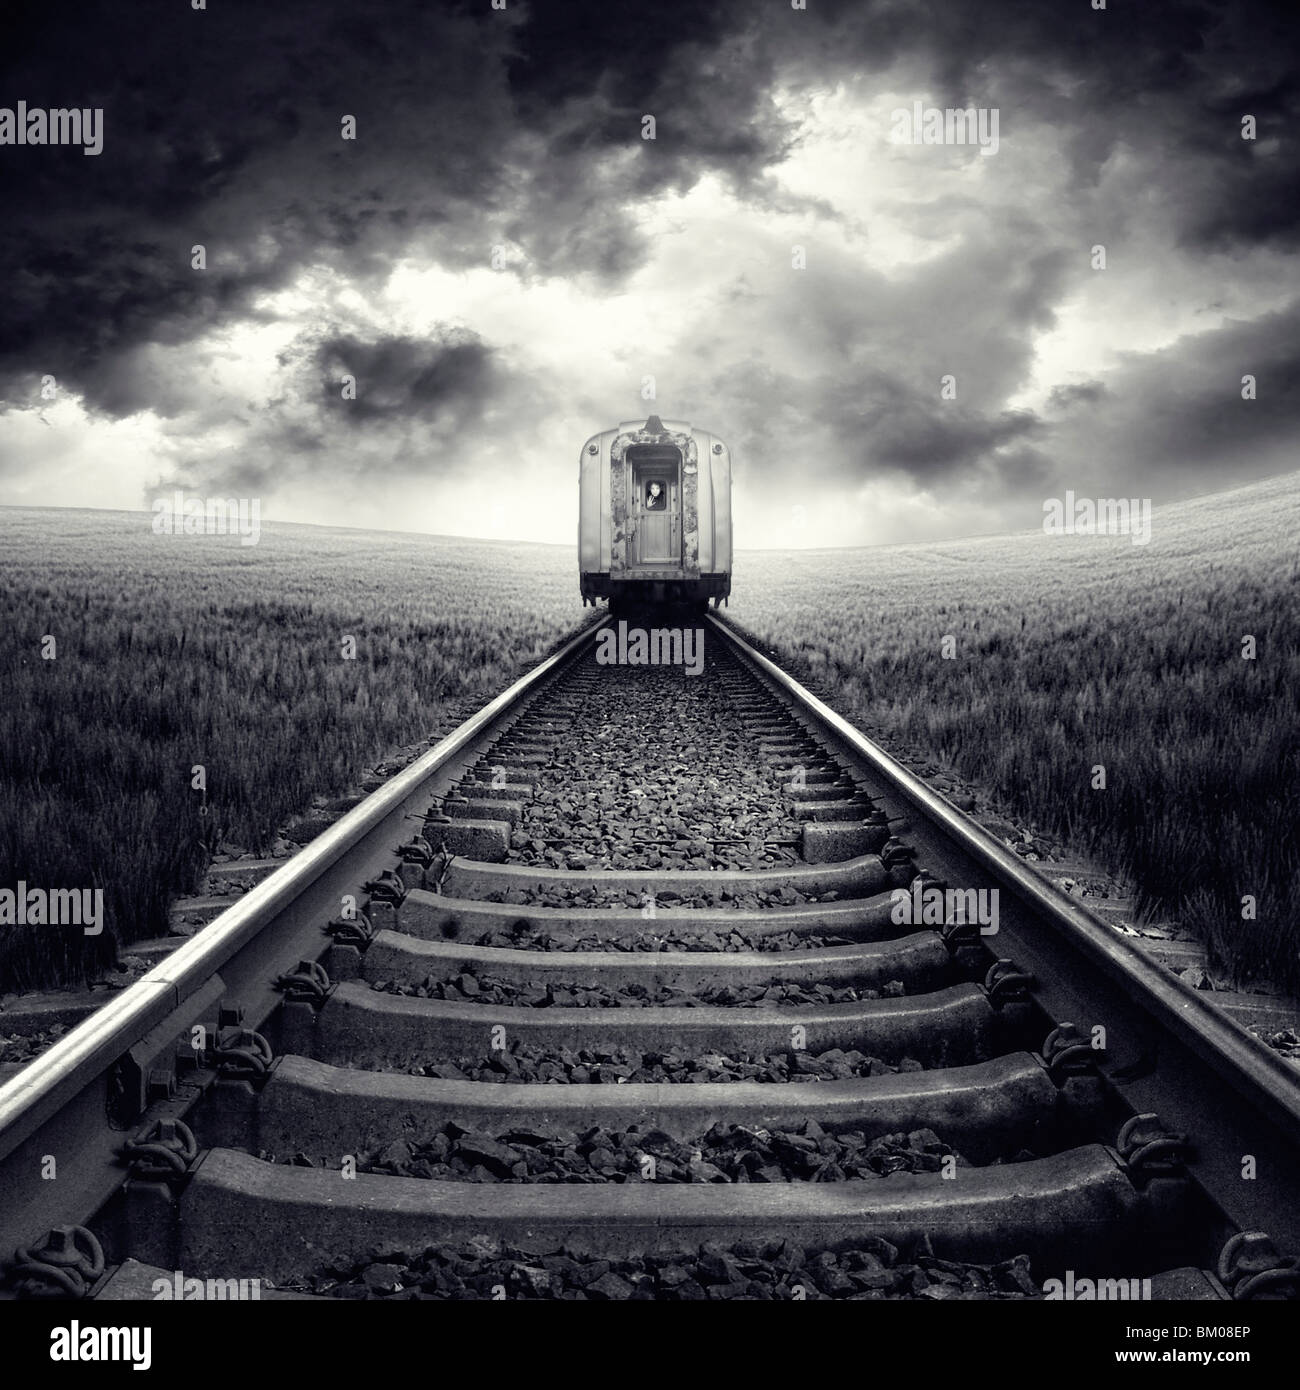 Vista trasera de un tren sobre los rieles que pasa a través de un campo de maíz con cielo tormentoso Foto de stock